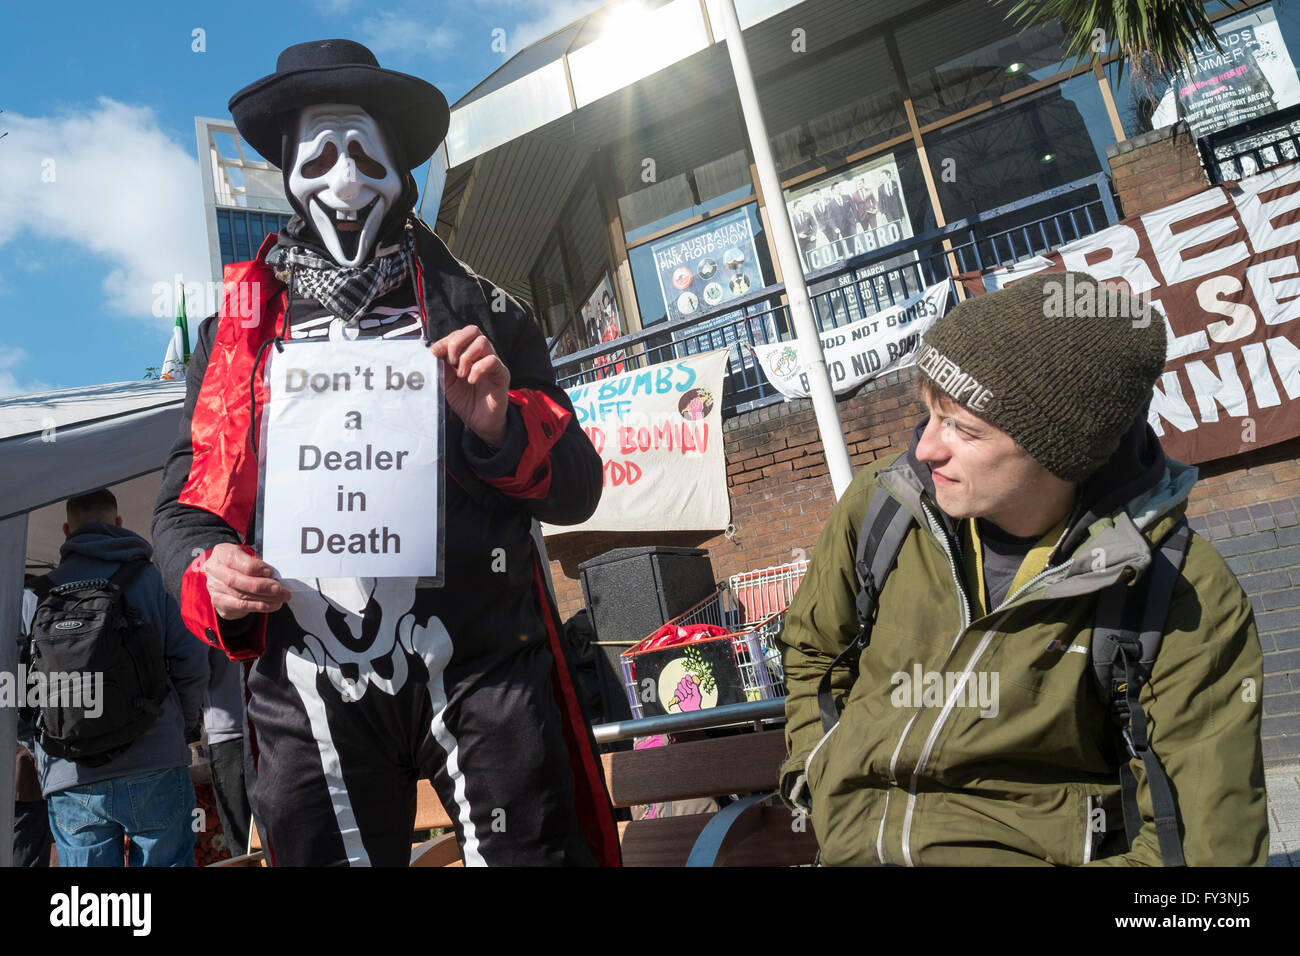 Rally Against Gun tratamiento justo en Cardiff, País de Gales Foto de stock